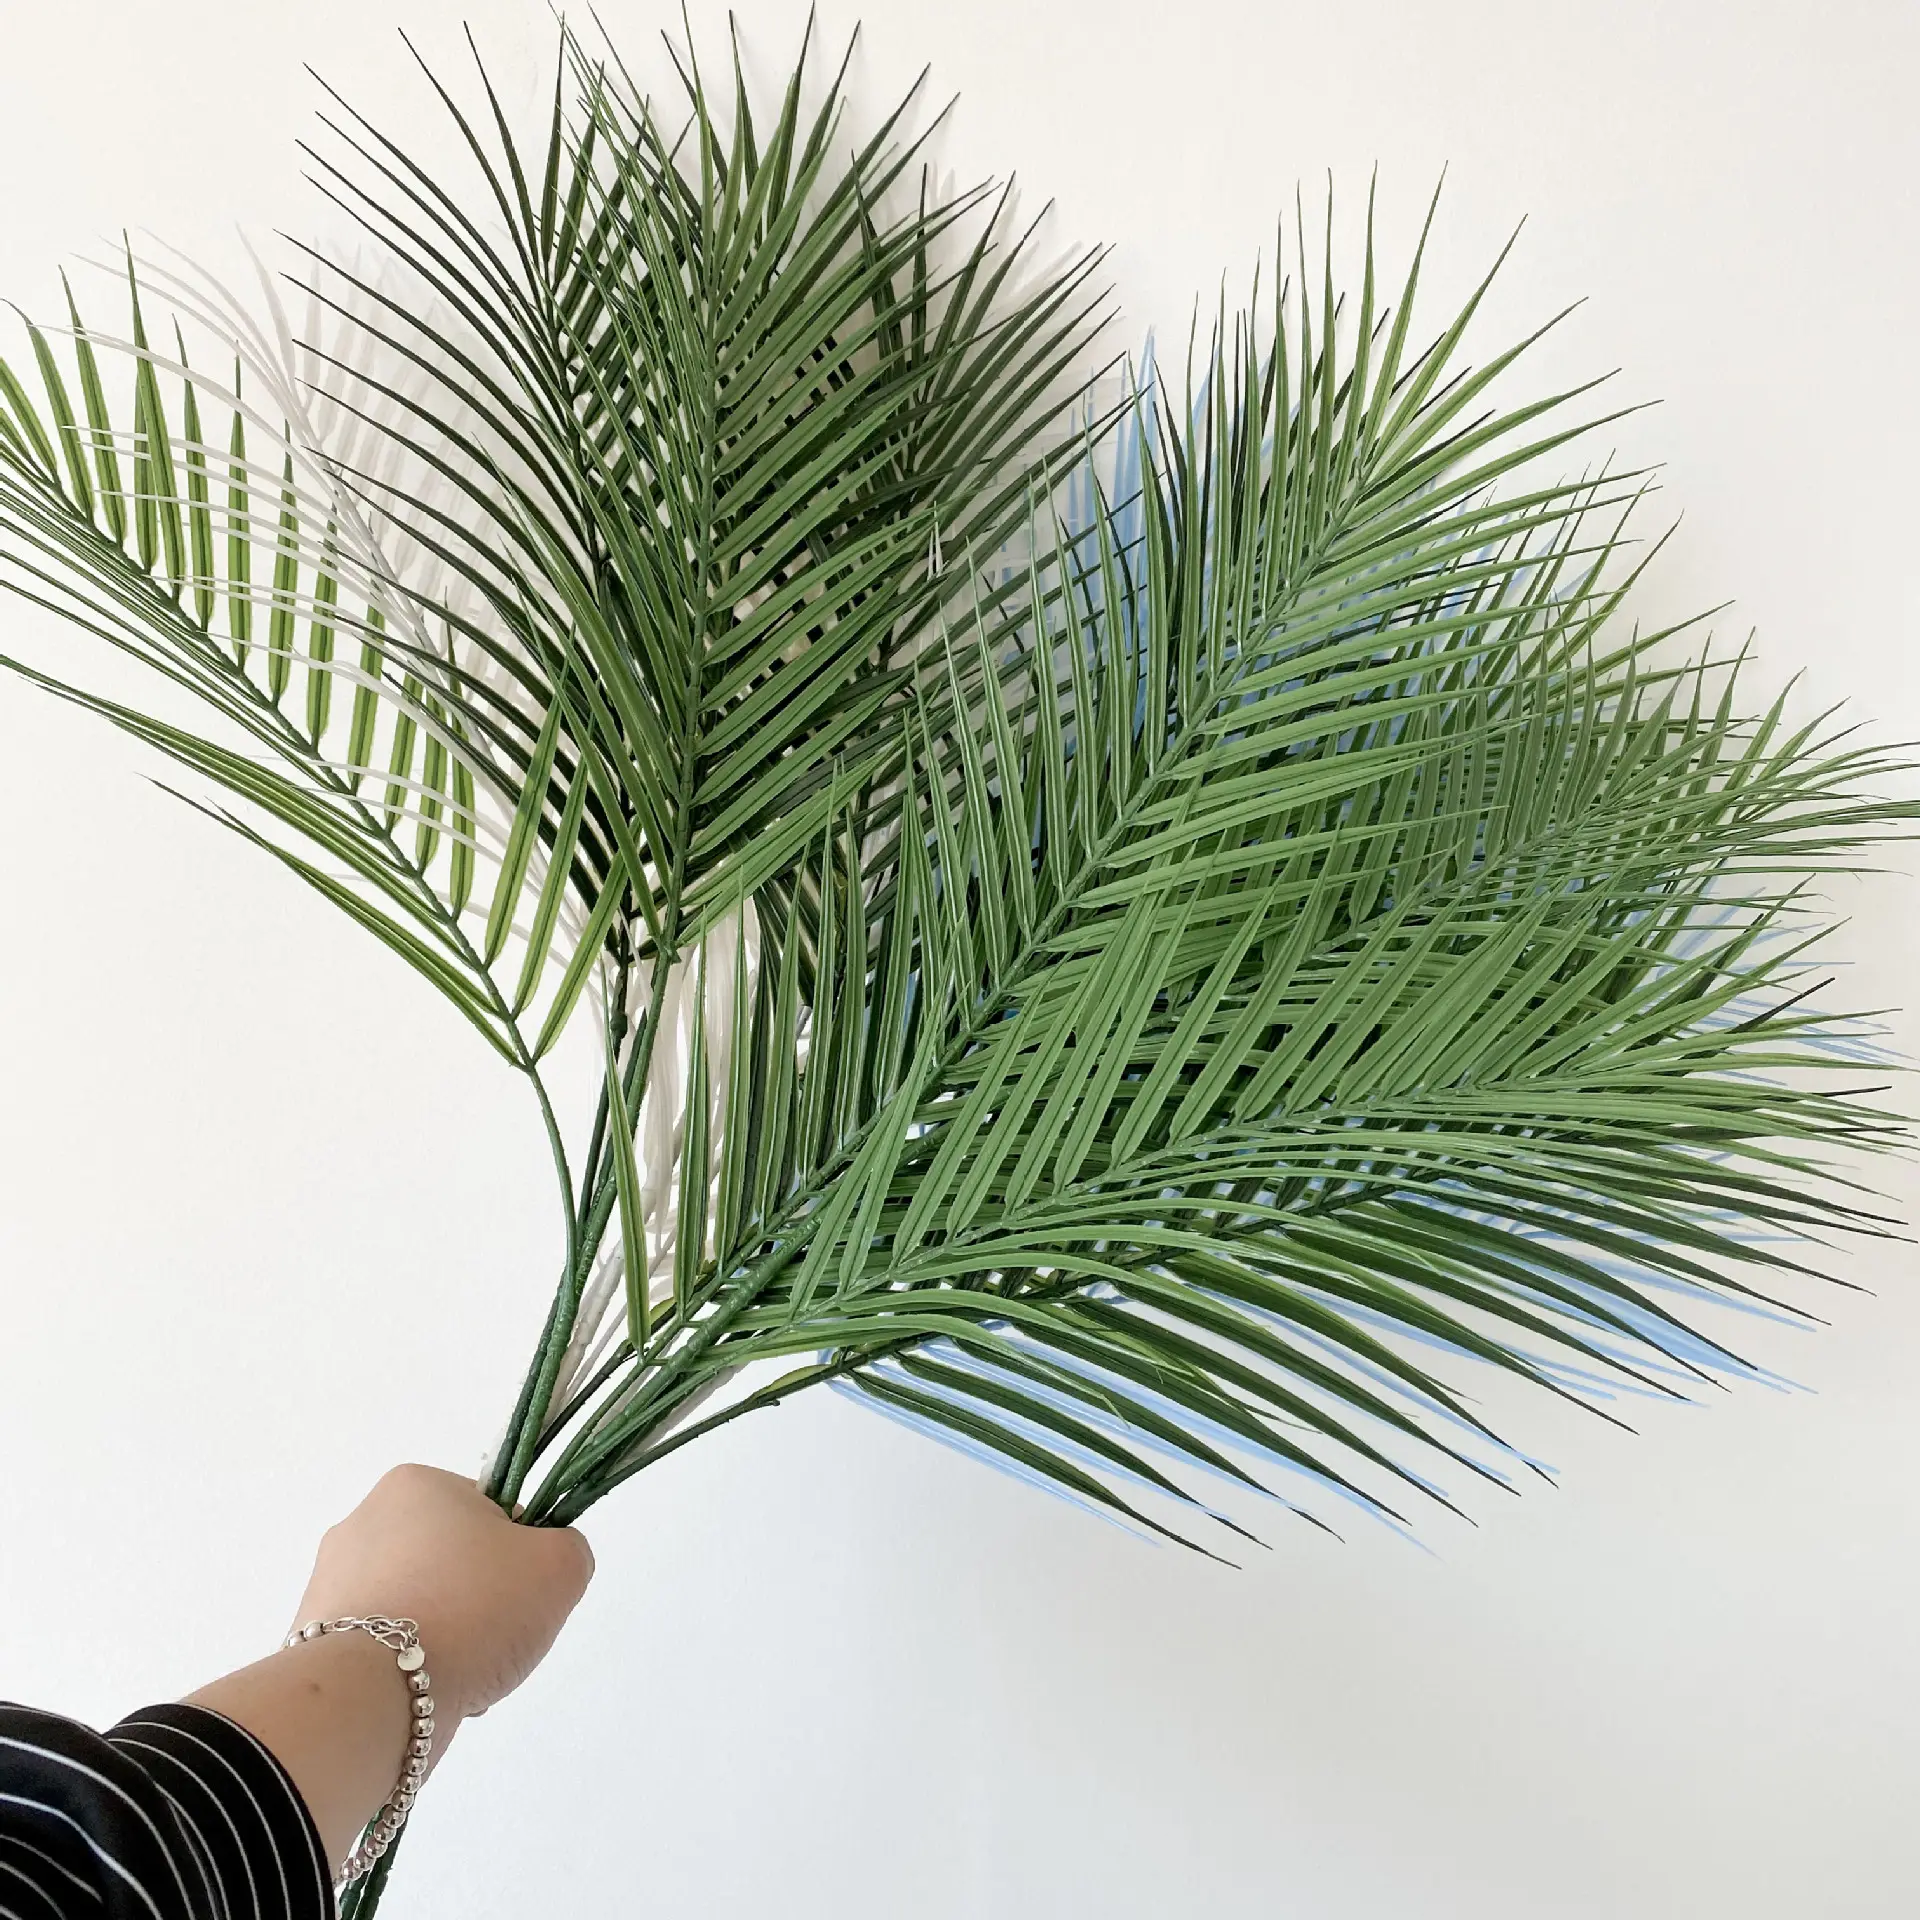 인공 멀티 컬러 야자수 잎 93cm 길이 열대 잎 장식 식물 보존 야자수 잎 판매